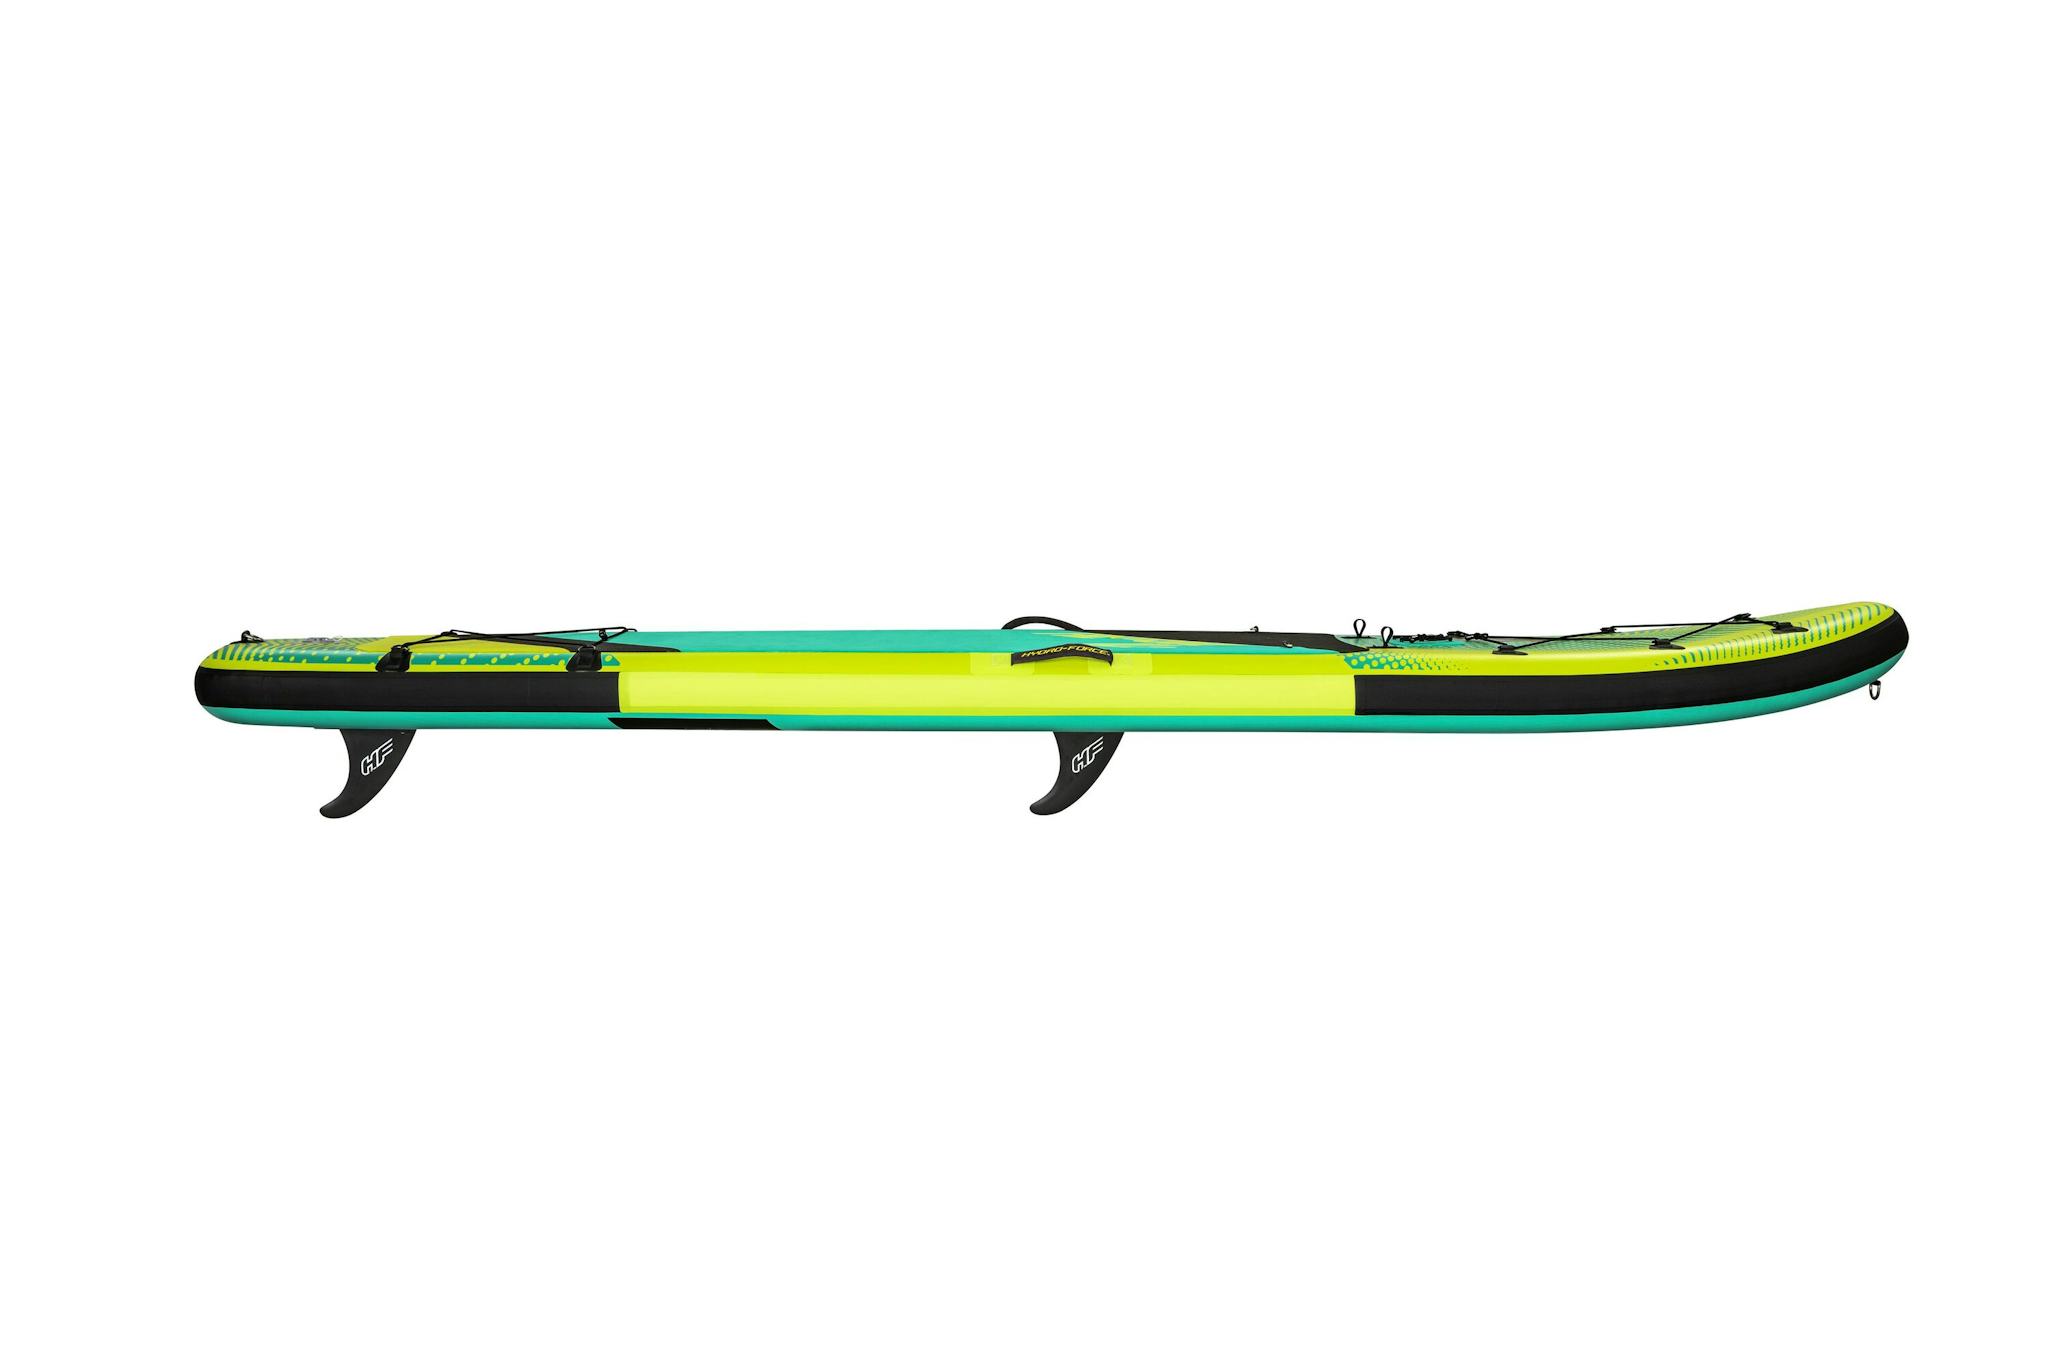 Sports d'eau Paddle SUP Freesoul Tech 340 x 89 x 15 cm transformable en kayak ou en planche à voile, avec siège, cale-pieds, pompe Bestway 5